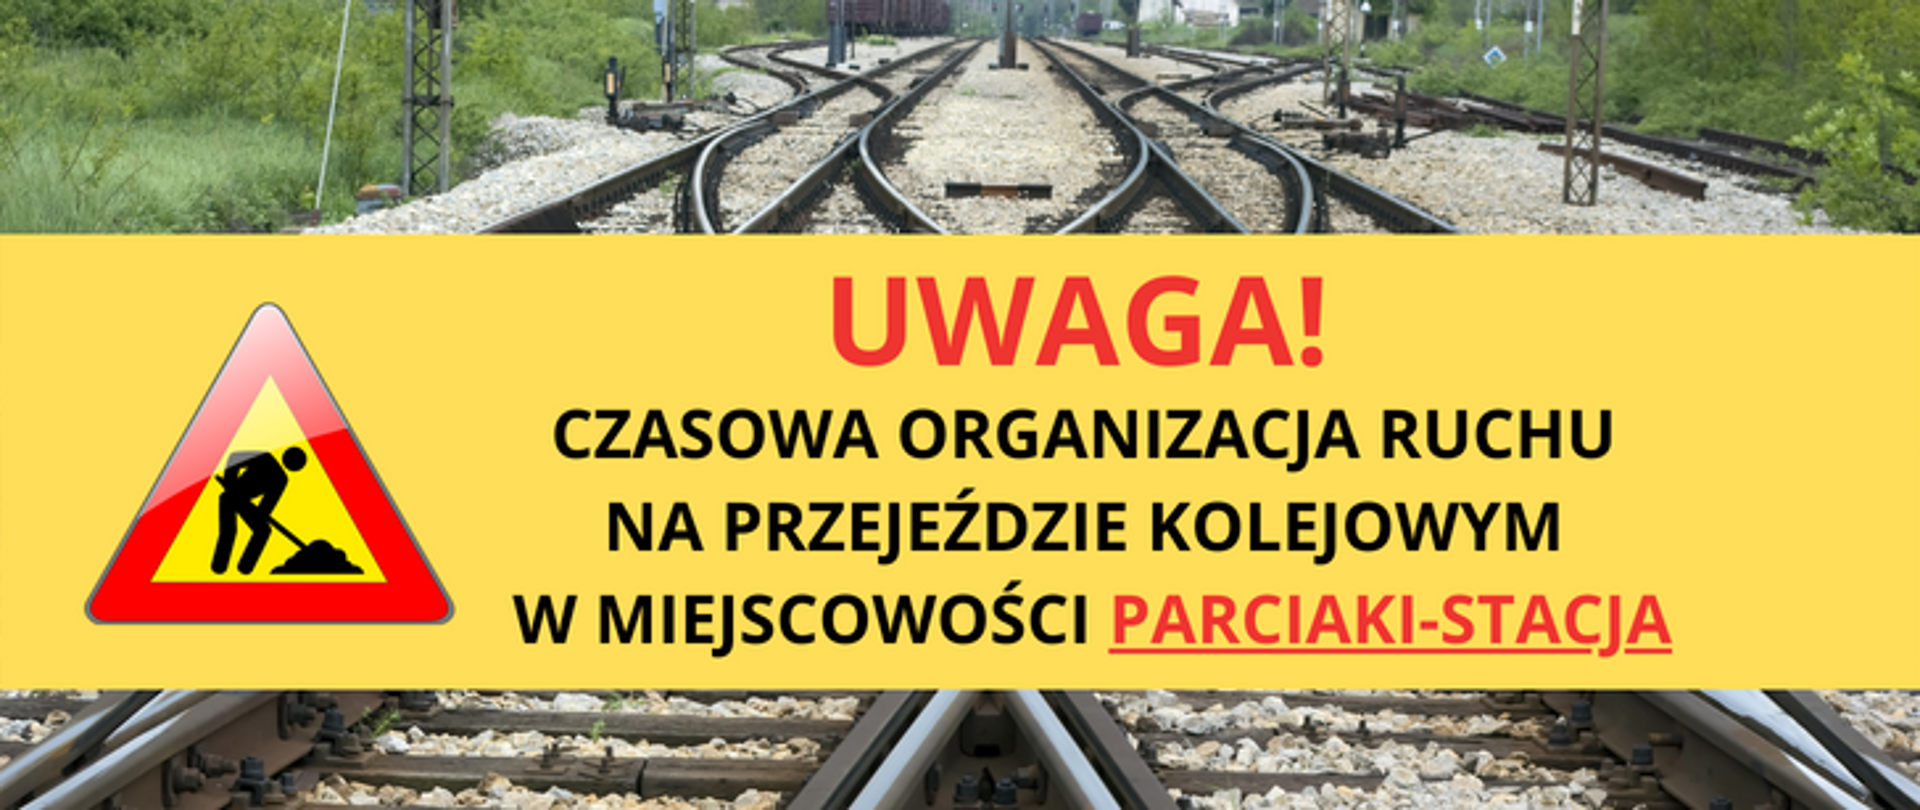 Grafika informująca o wprowadzeniu czasowej organizacji ruchu na przejeździe kolejowym w Parciakach-Stacji.